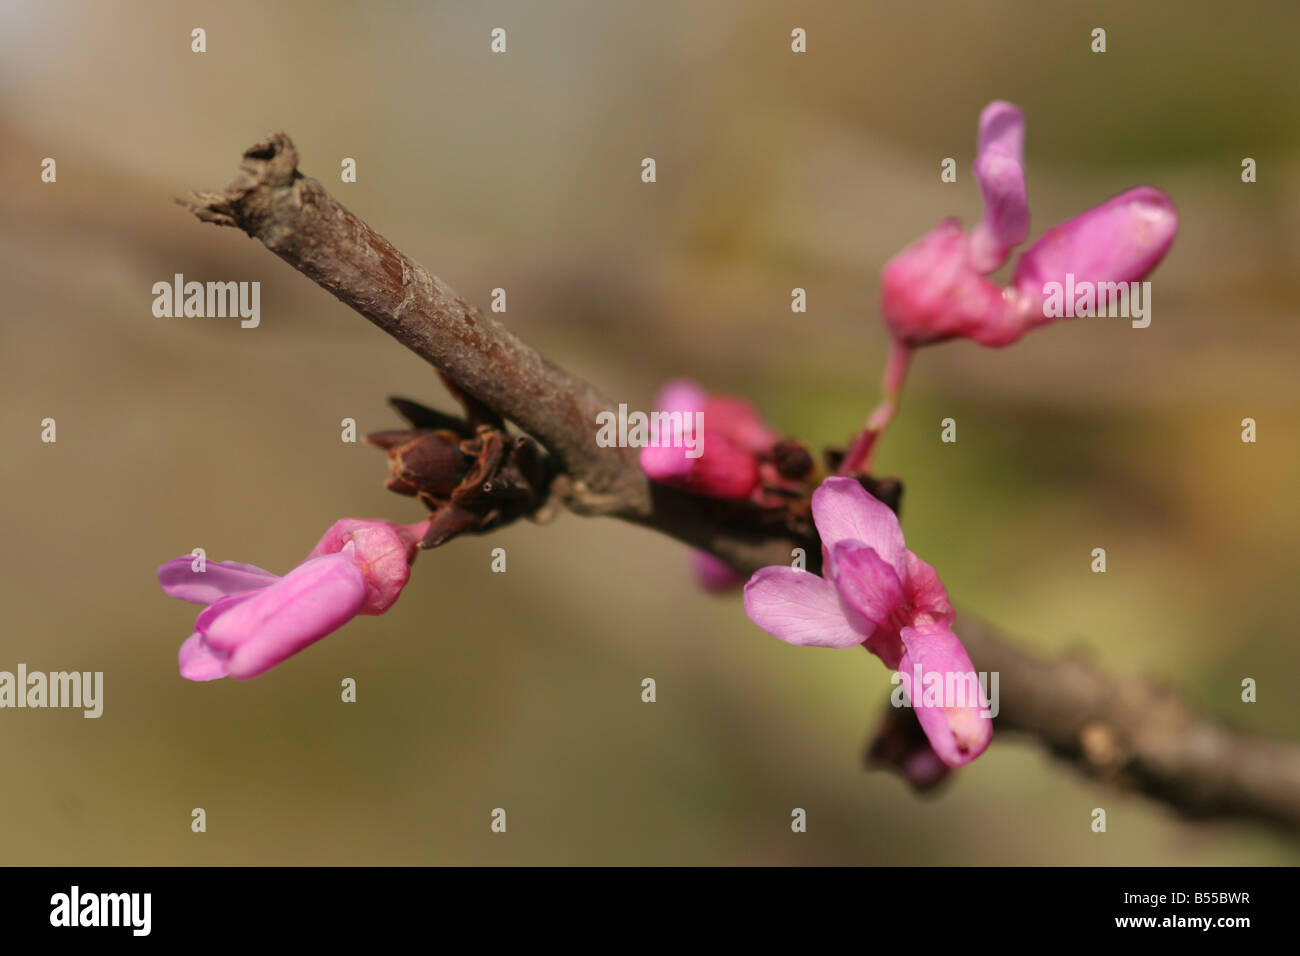 Cercis siliquastrum arbre de Judée un petit arbre à feuilles caduques qui est noté pour son affichage prolifique de fleurs rose profond Banque D'Images